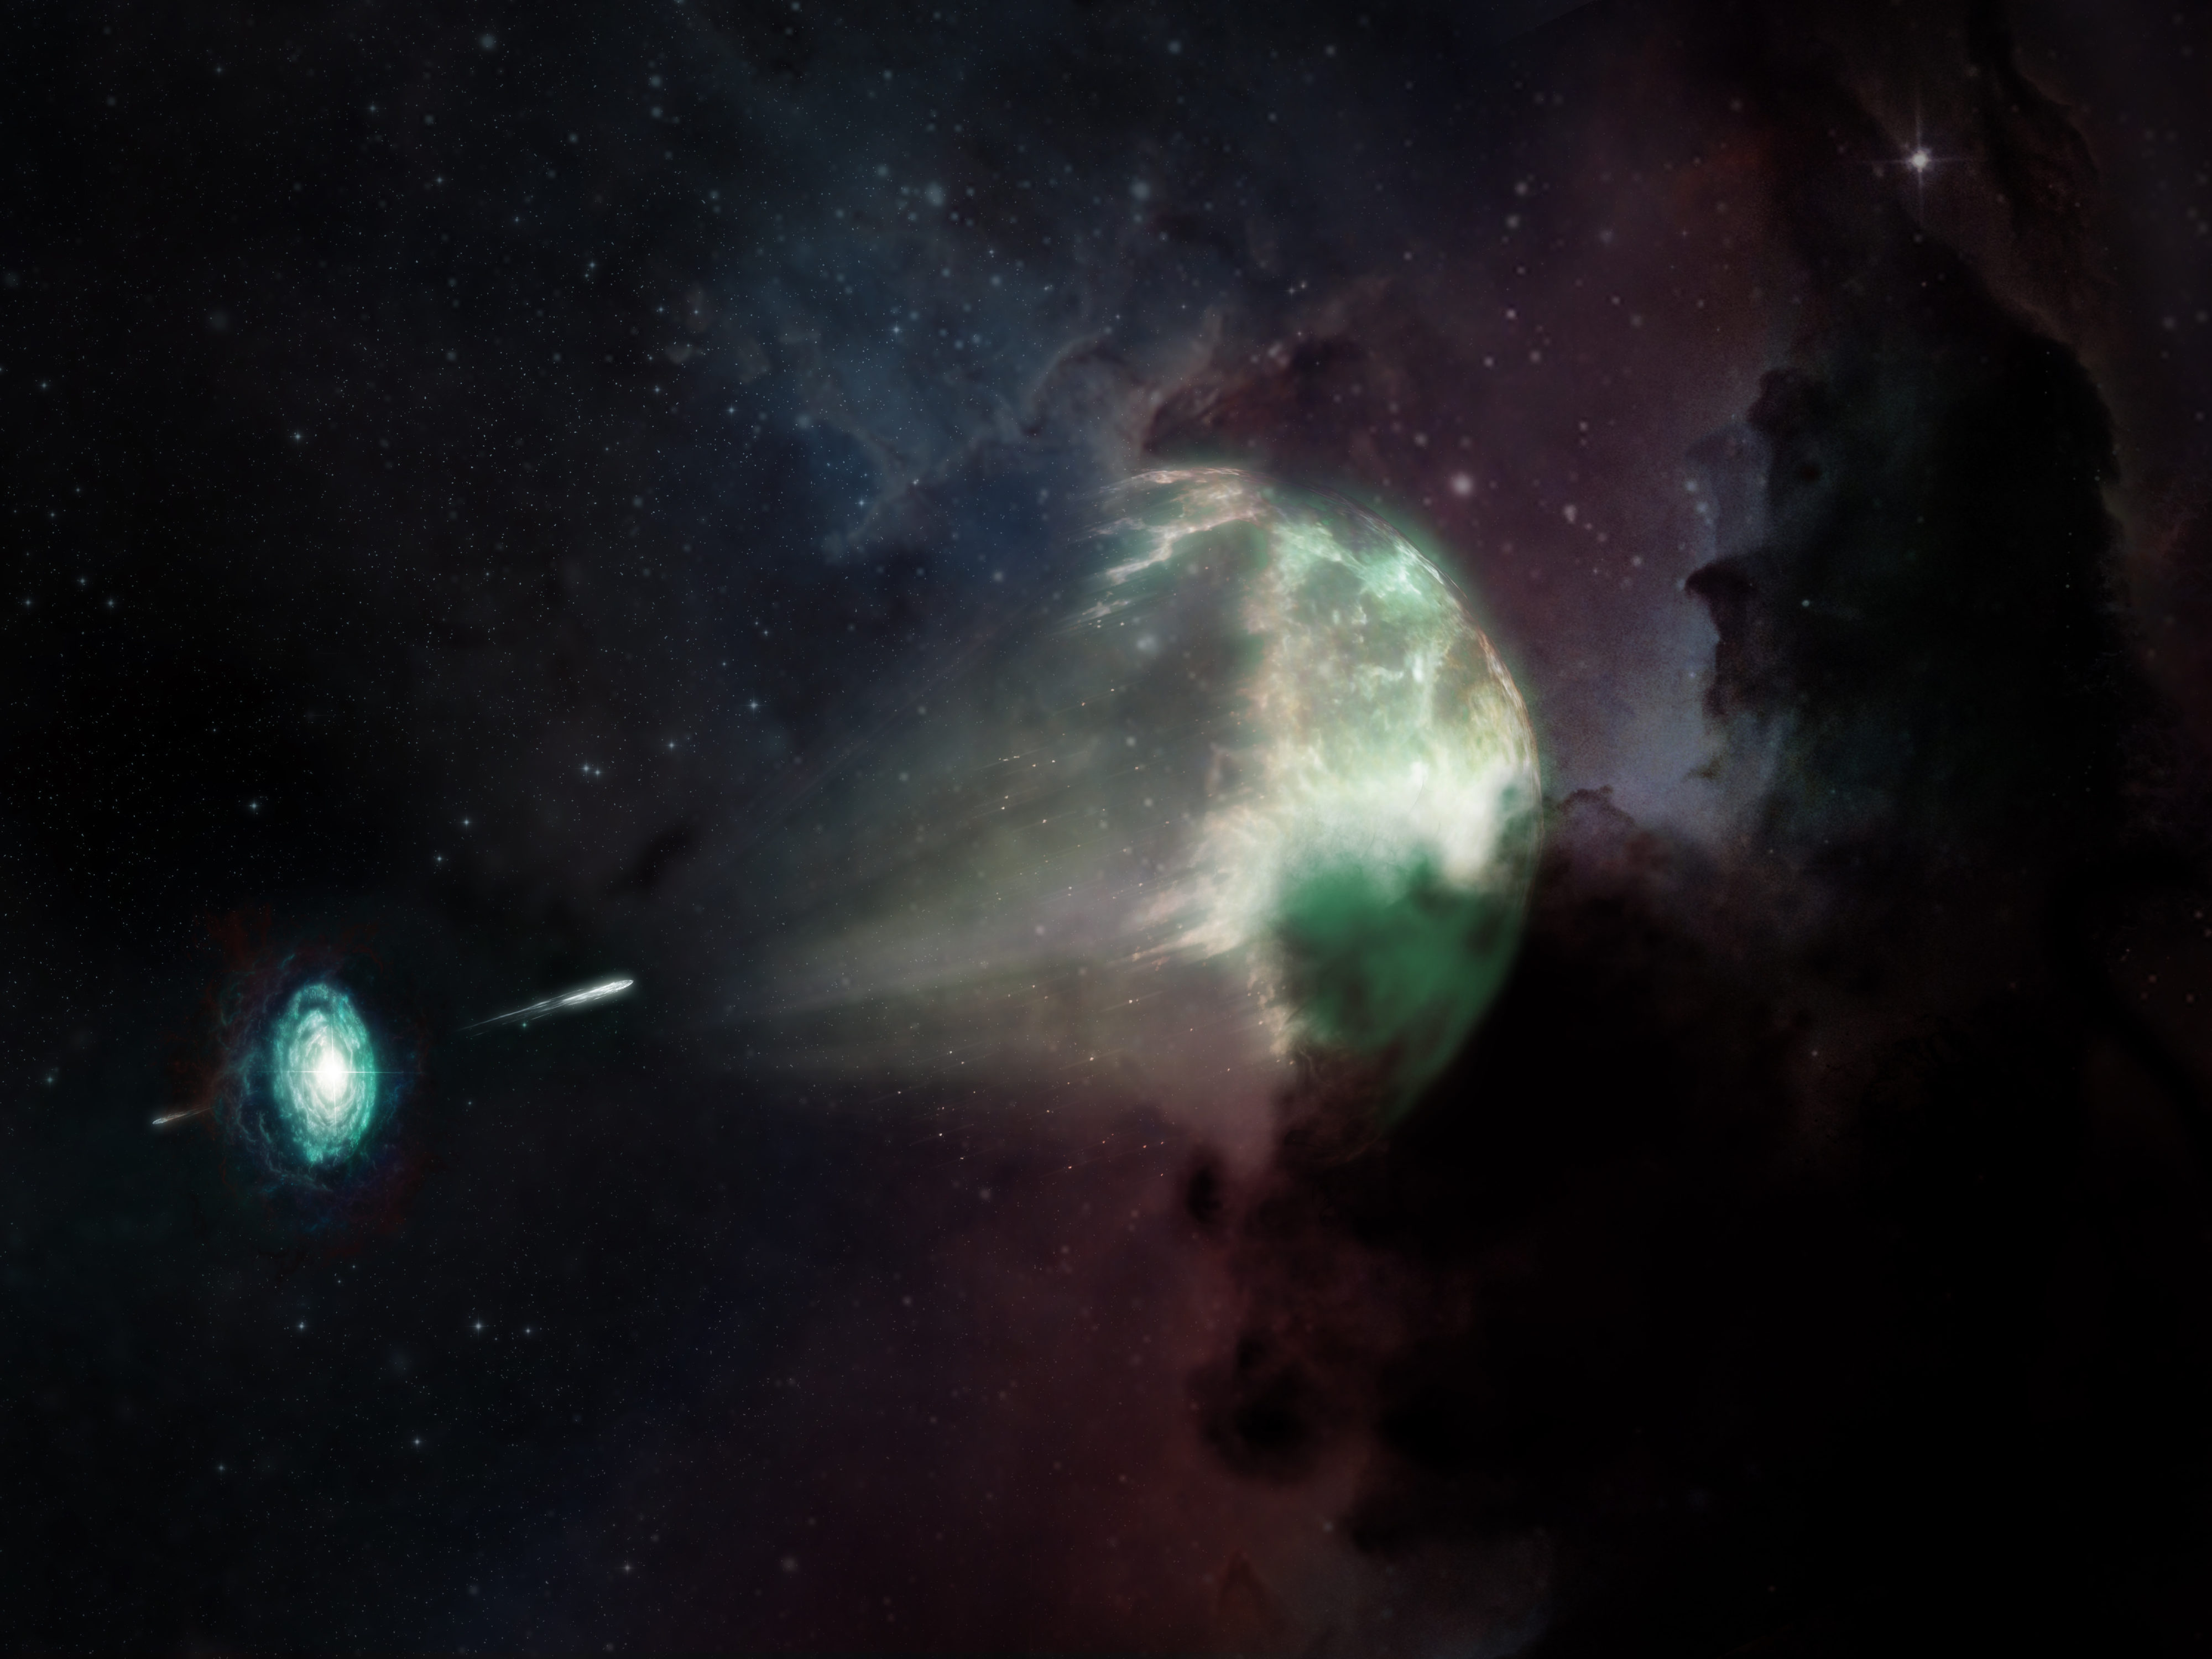 Por primera vez en la historia de la radioastronomía, se detectó luz en longitudes de onda milimétricas proveniente de un destello de rayos gamma de corta duración. En esta representación artística se aprecia la fusión de una estrella de neutrones con otra estrella (en forma de disco, abajo a la izquierda) que causó una explosión de la que emanó el destello de rayos gamma de corta duración GRB 211106A (chorro blanco en el centro) y que dejó una de las luminiscencias residuales más brillantes observadas a la fecha (onda de choque semiesférica en la zona centro-derecha). Mientras el polvo de la galaxia anfitriona oscureció la mayor parte de la luz visible (mostrada en colores), la luz milimétrica del fenómeno (representada en verde) pudo atravesarlo y llegar hasta el Atacama Large Millimeter/submillimeter Array (ALMA). De esa forma, la comunidad científica obtuvo una vista sin precedentes de la explosión cósmica. A partir de este estudio, se pudo confirmar que GRB 211106A es uno de los destellos de rayos gamma de corta duración más energéticos que se hayan observado. Créditos: ALMA (ESO/NAOJ/NRAO), M. Weiss (NRAO/AUI/NSF)